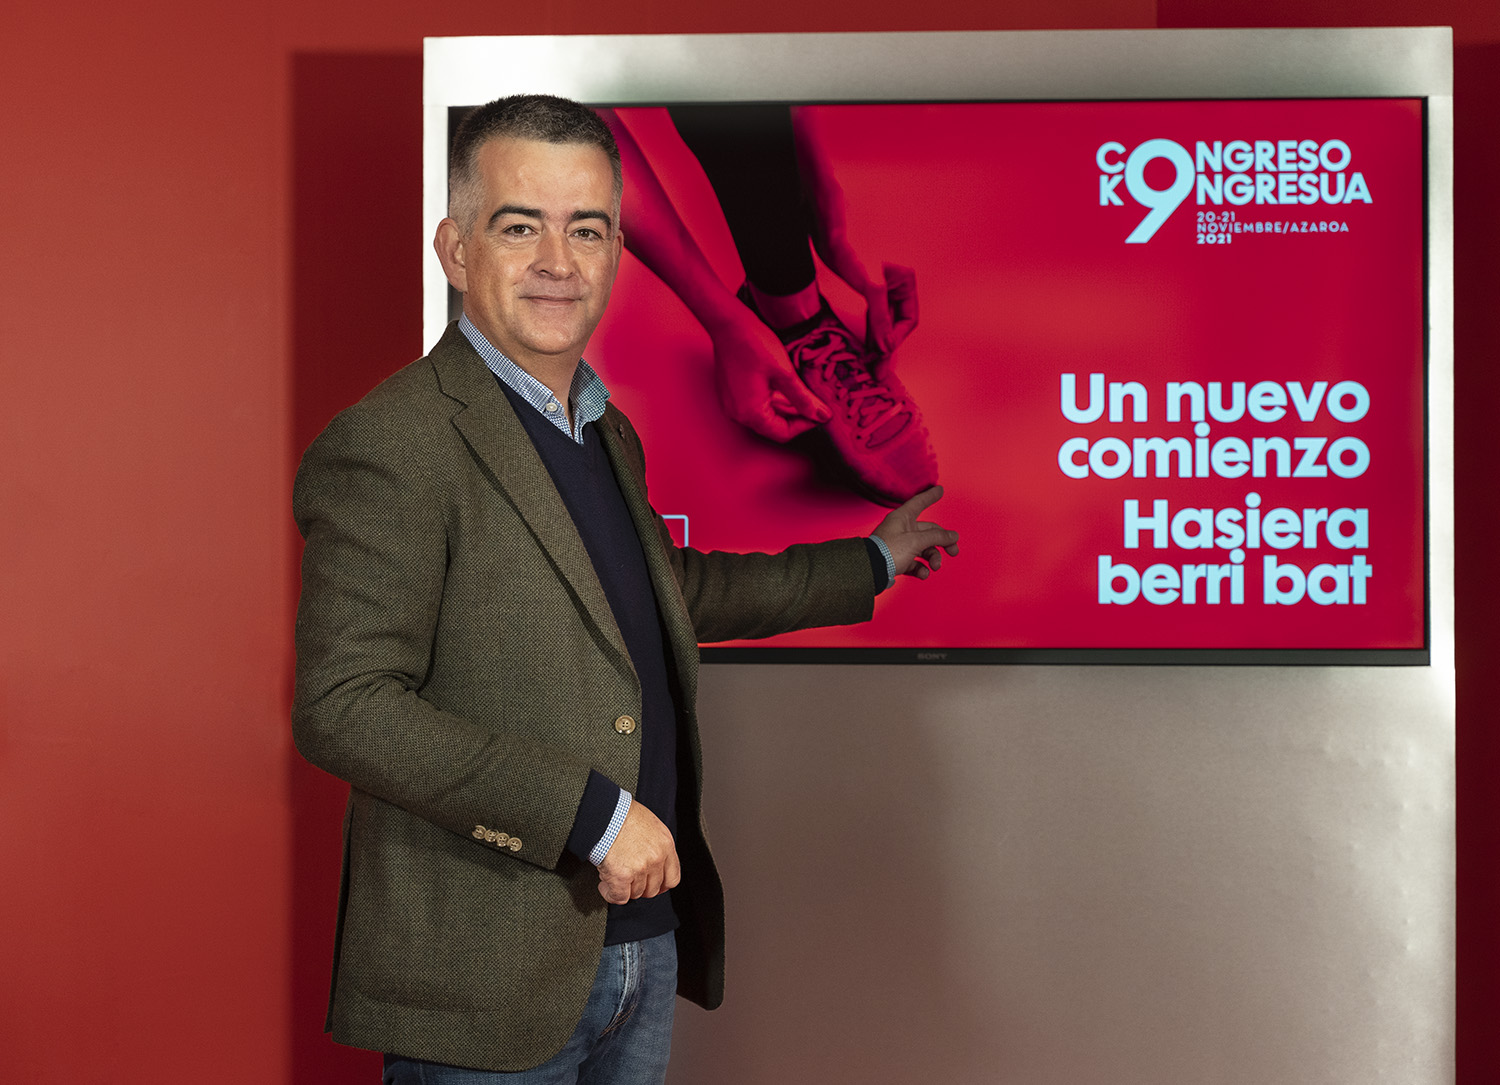 Miguel Angel Morales, Secretario de Organización del PSE-EE | Foto: Socialistas Vascos